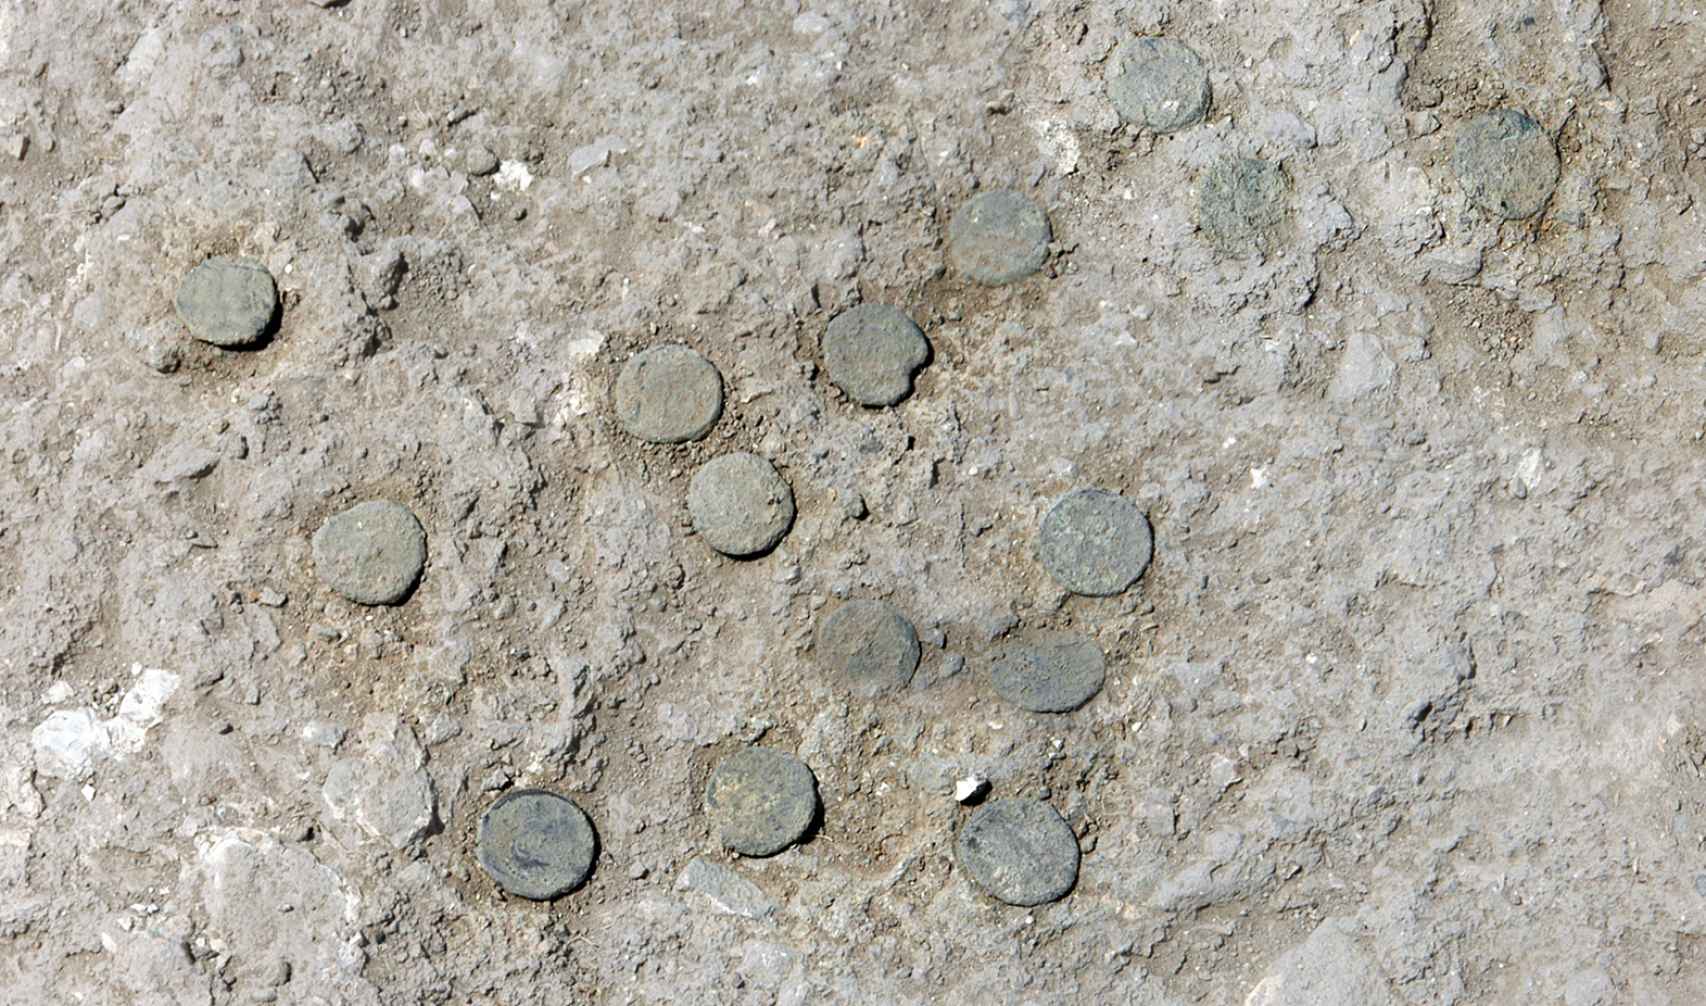 Detalle de las monedas descubiertas en la calle 1.